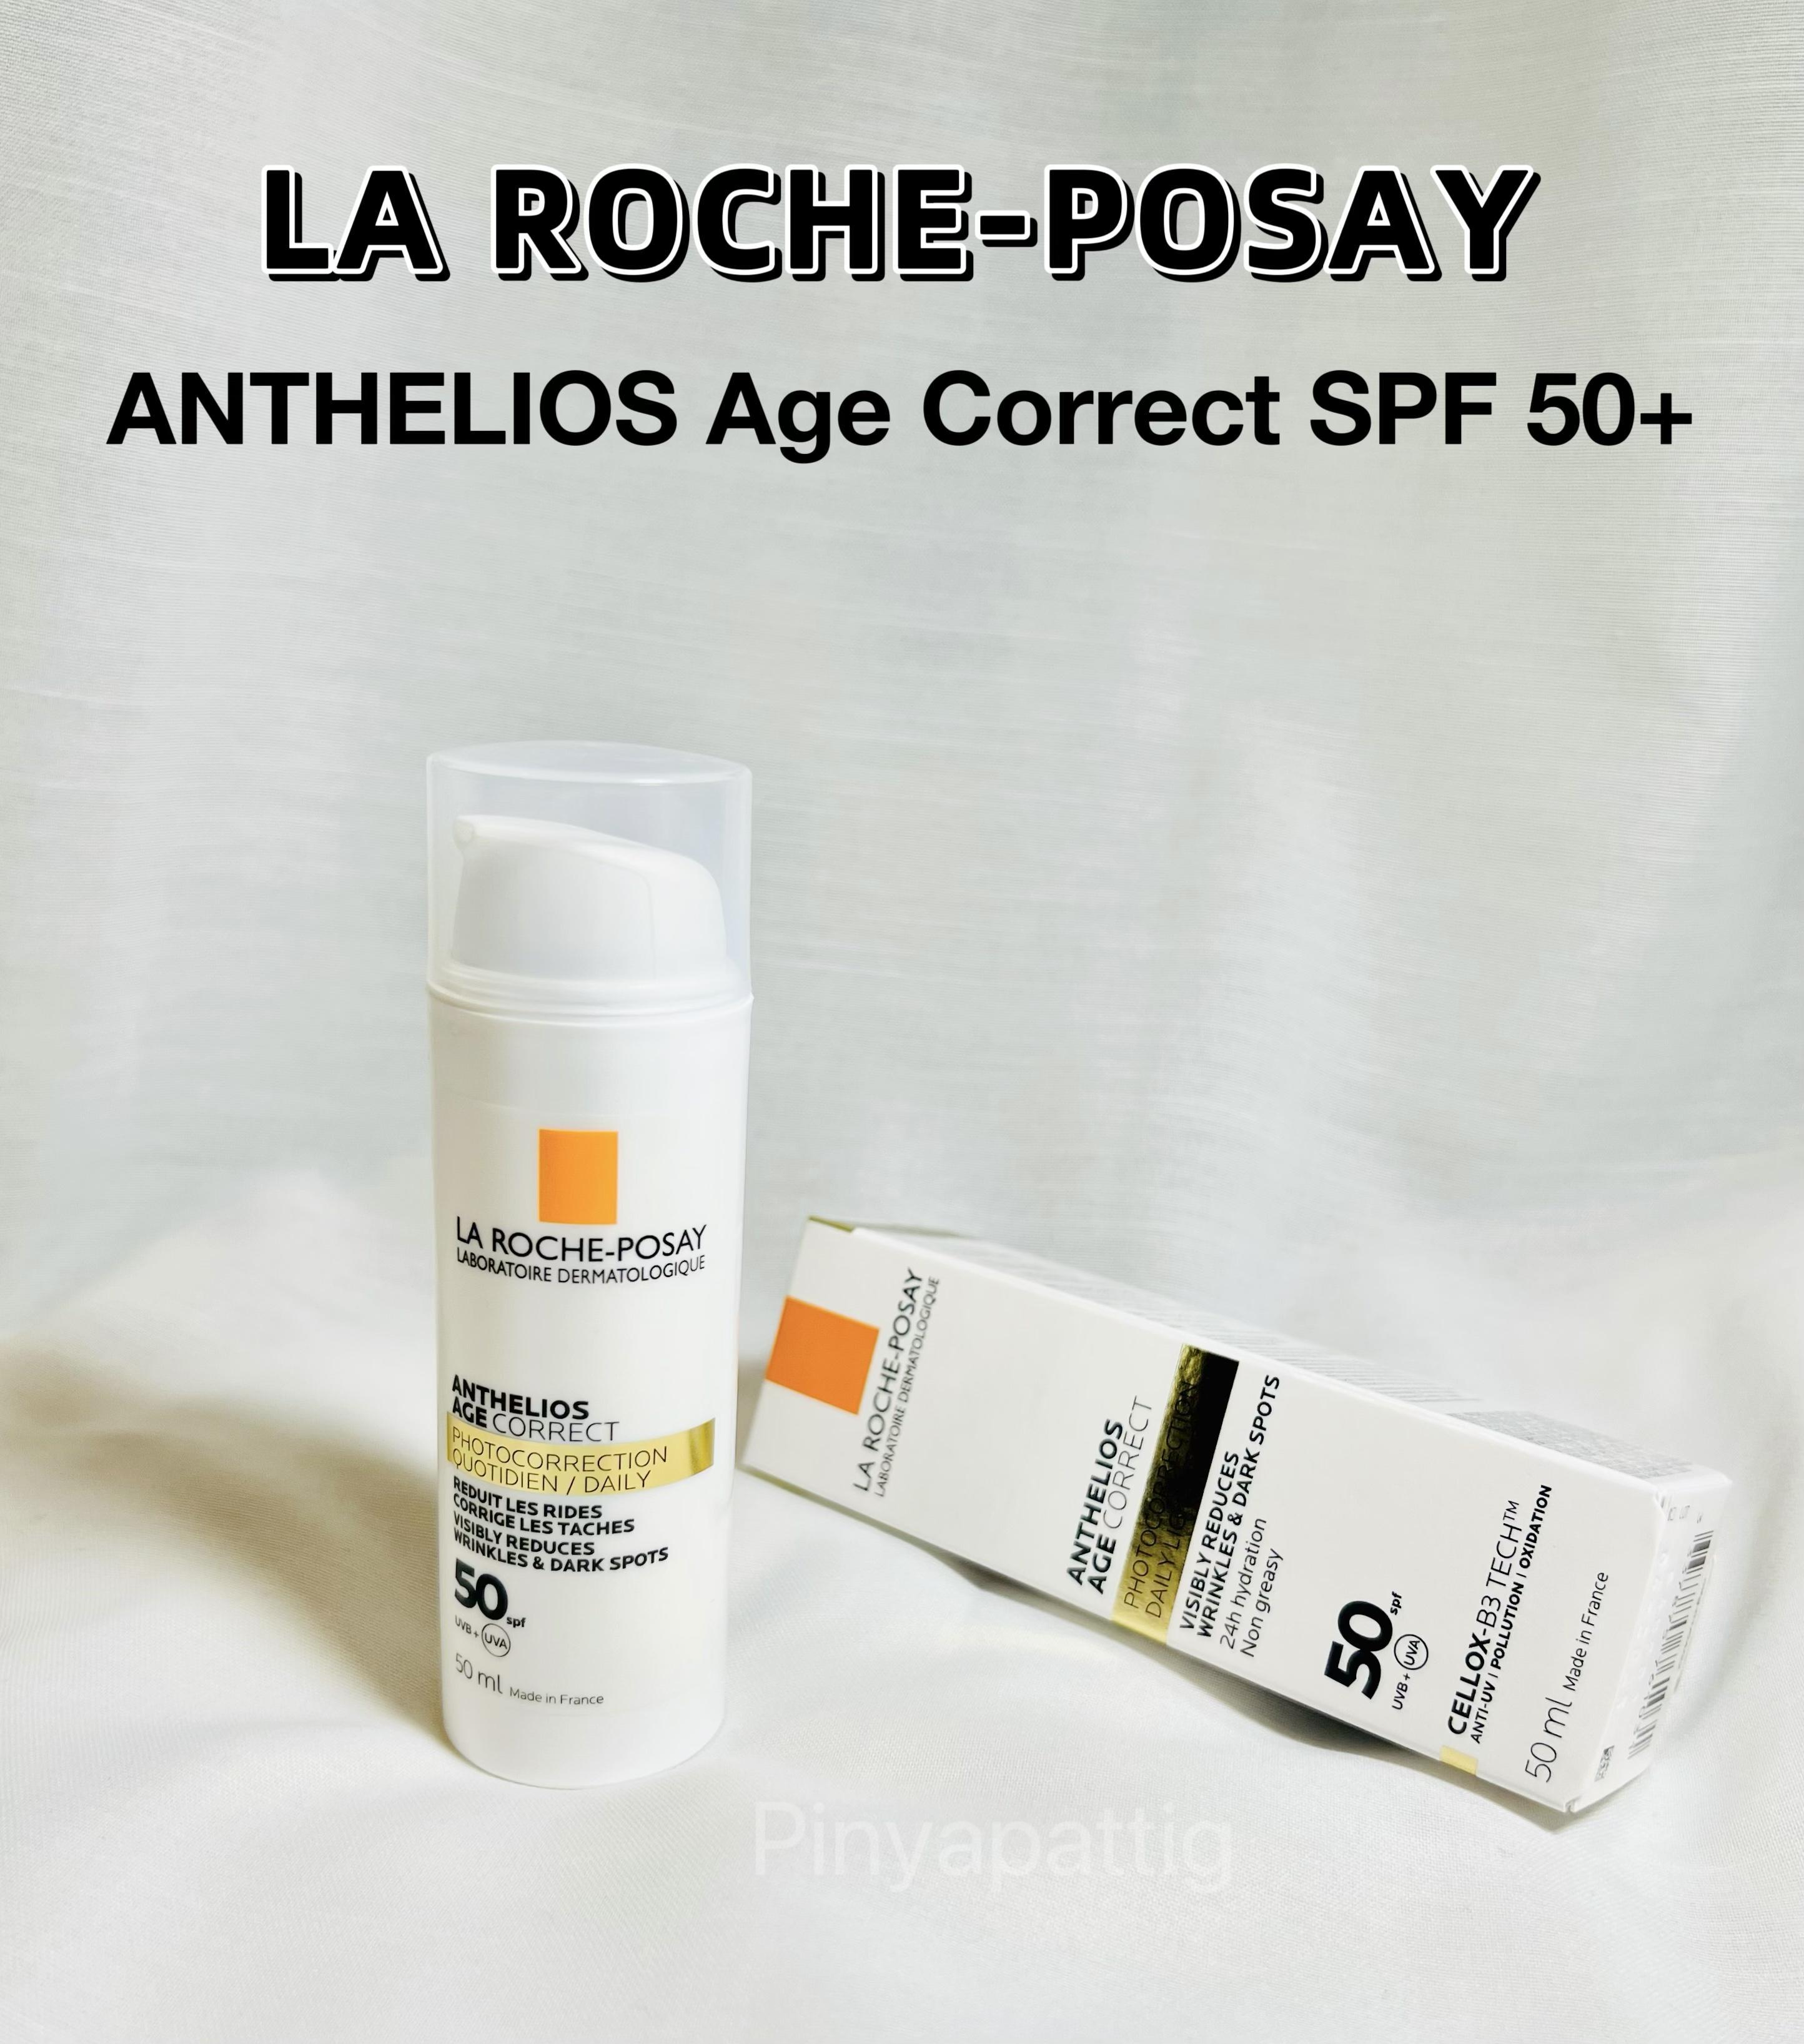 ภาพหน้าปก "LA ROCHE-POSAY ANTHELIOS AGE CORRECT SPF 50+" กันแดดพร้อมบำรุงในตัว ที่:0